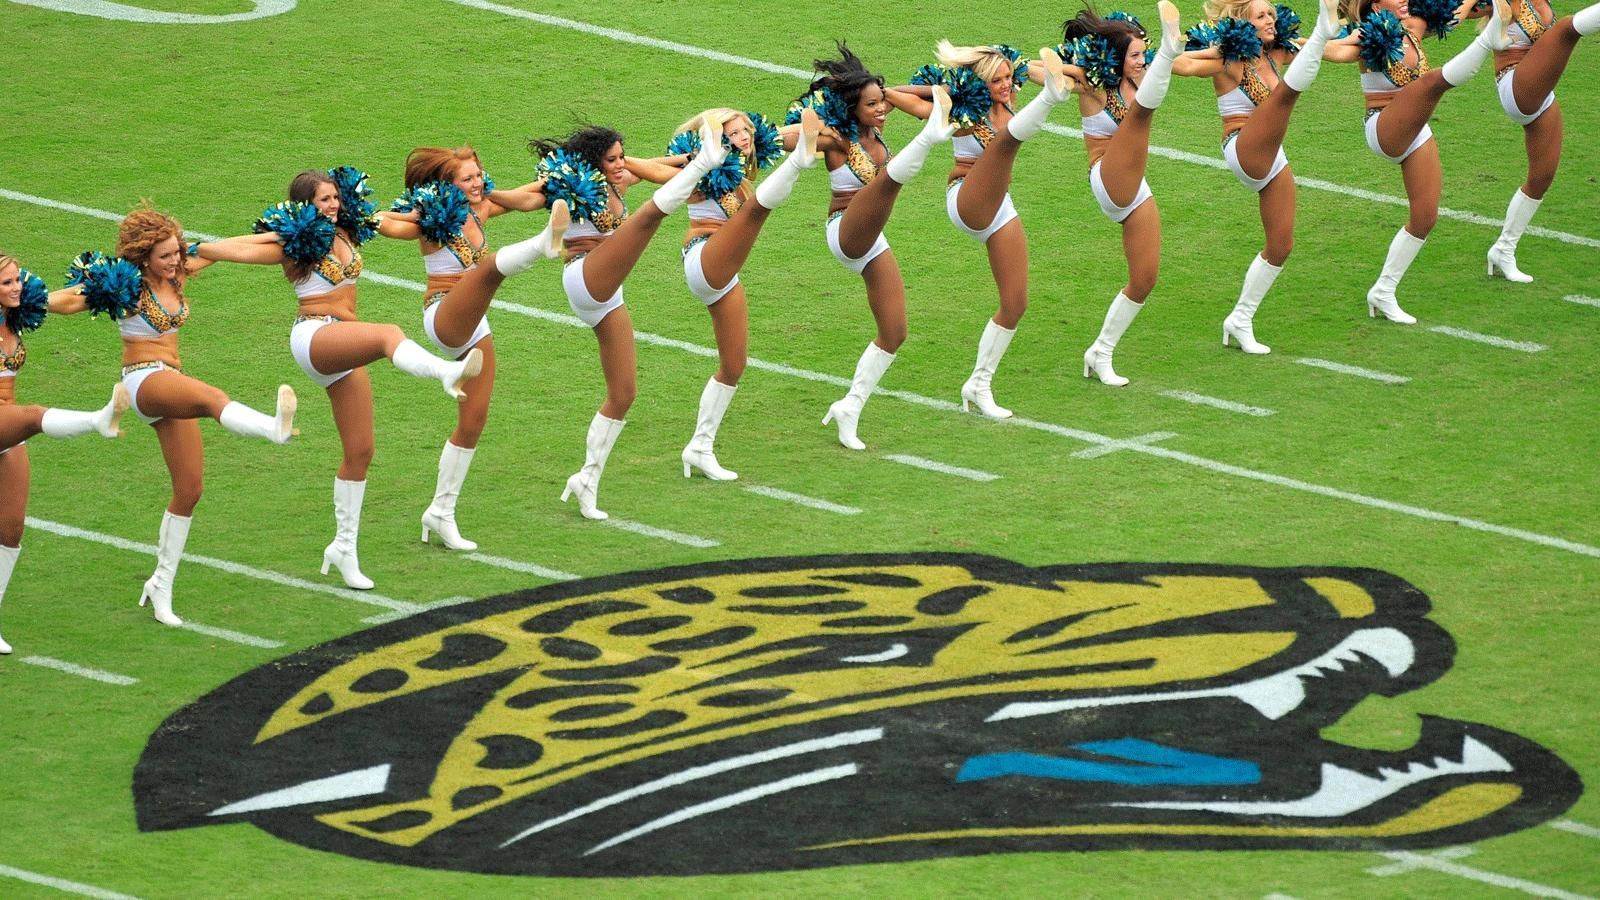 
                <strong>Jacksonville Jaguars</strong><br>
                Die Jacksonville Jaguars nehmen wie die Carolina Panthers erst seit 1995 am Spielbetrieb der NFL teil. Der Teamname wurde mit einem "Name the Team Contest" bestimmt. Zu den beliebtesten Vorschlägen zählten auch "Stingrays", "Sharks" und "Panthers". Letztendlich fiel die Wahl auf die Jaguars. Zu dieser Zeit war der älteste lebende Jaguar in Nordamerika nämlich im Zoo von Jacksonville beheimatet.
              